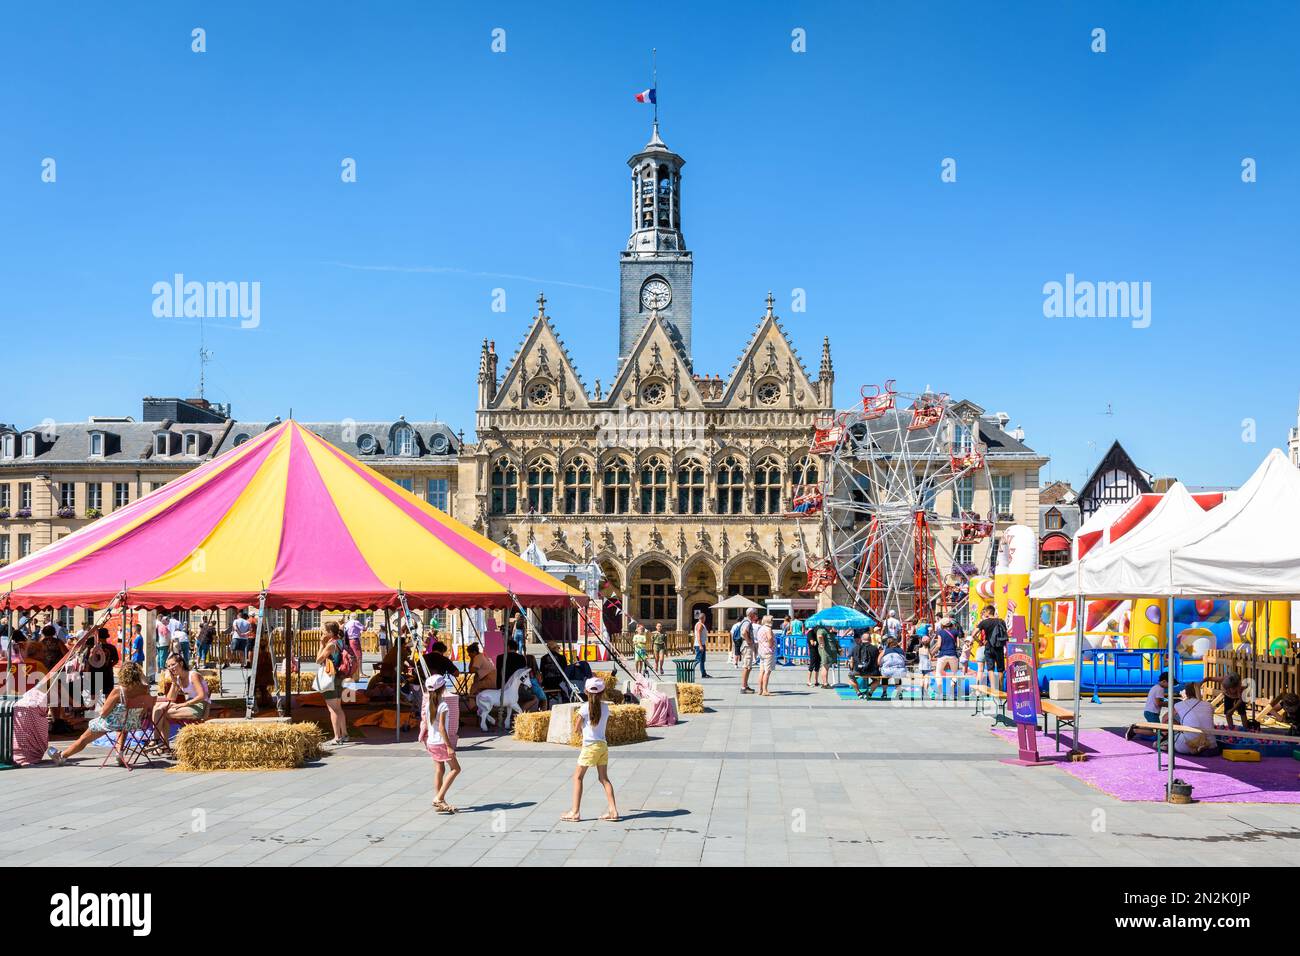 Facciata in stile gotico del municipio di Saint-Quentin, Francia, con il Circus Parc intrattenimento estivo in primo piano in una giornata di sole. Foto Stock